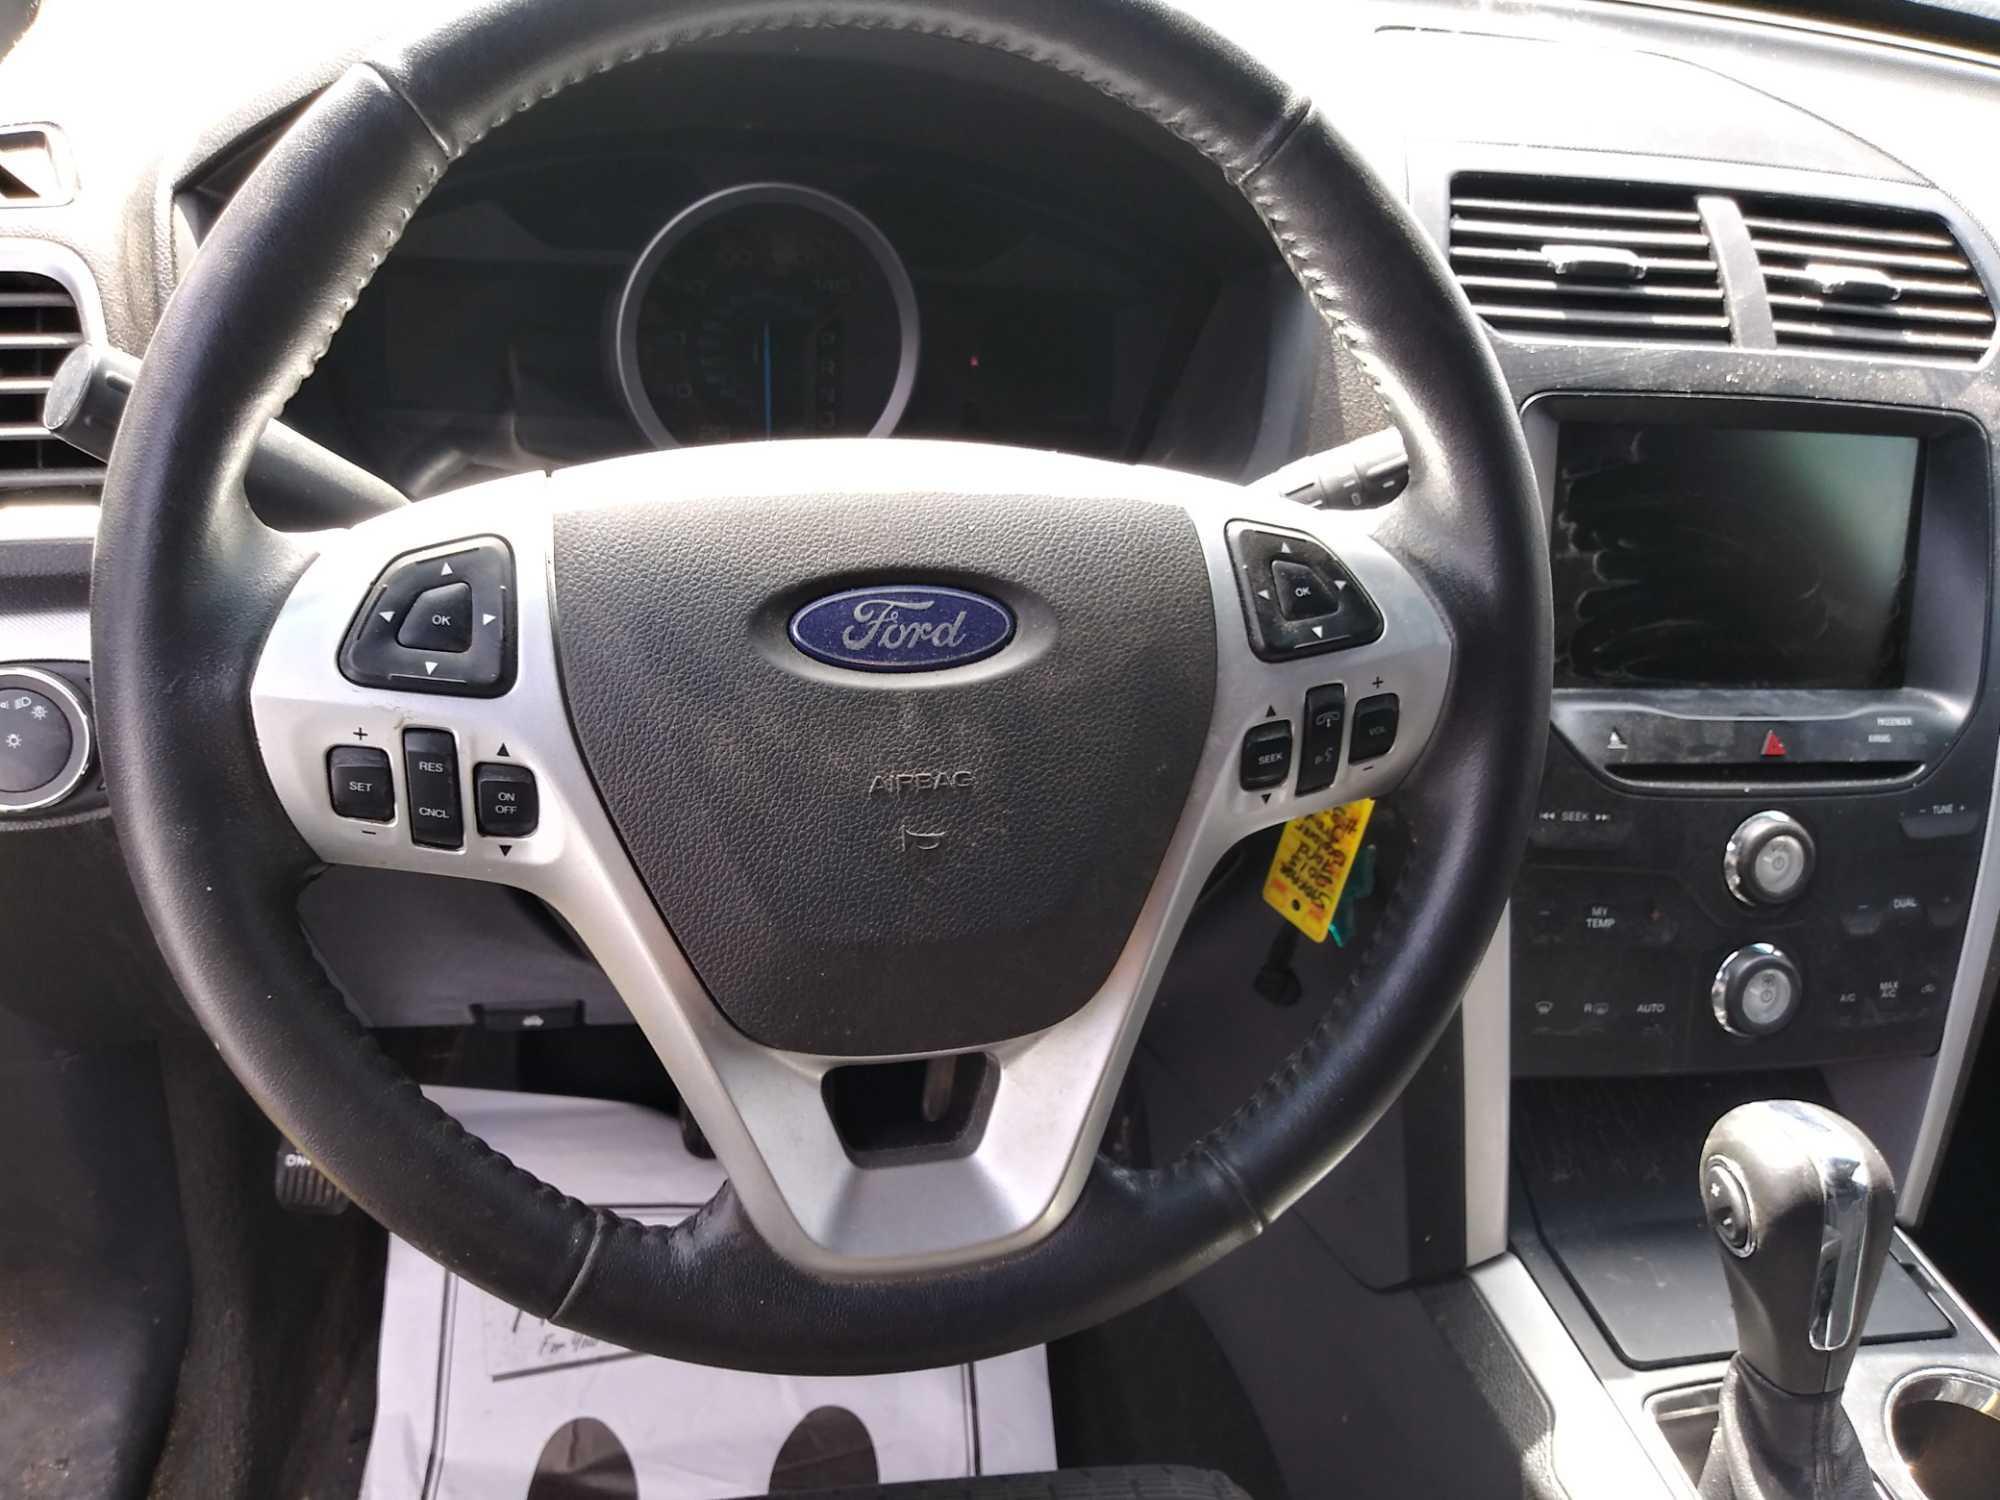 2015 Ford Explorer Multipurpose Vehicle, VIN# 1FM5K7D85FGC15443 *TO BE SOLD TO THE HIGHEST BIDDER*